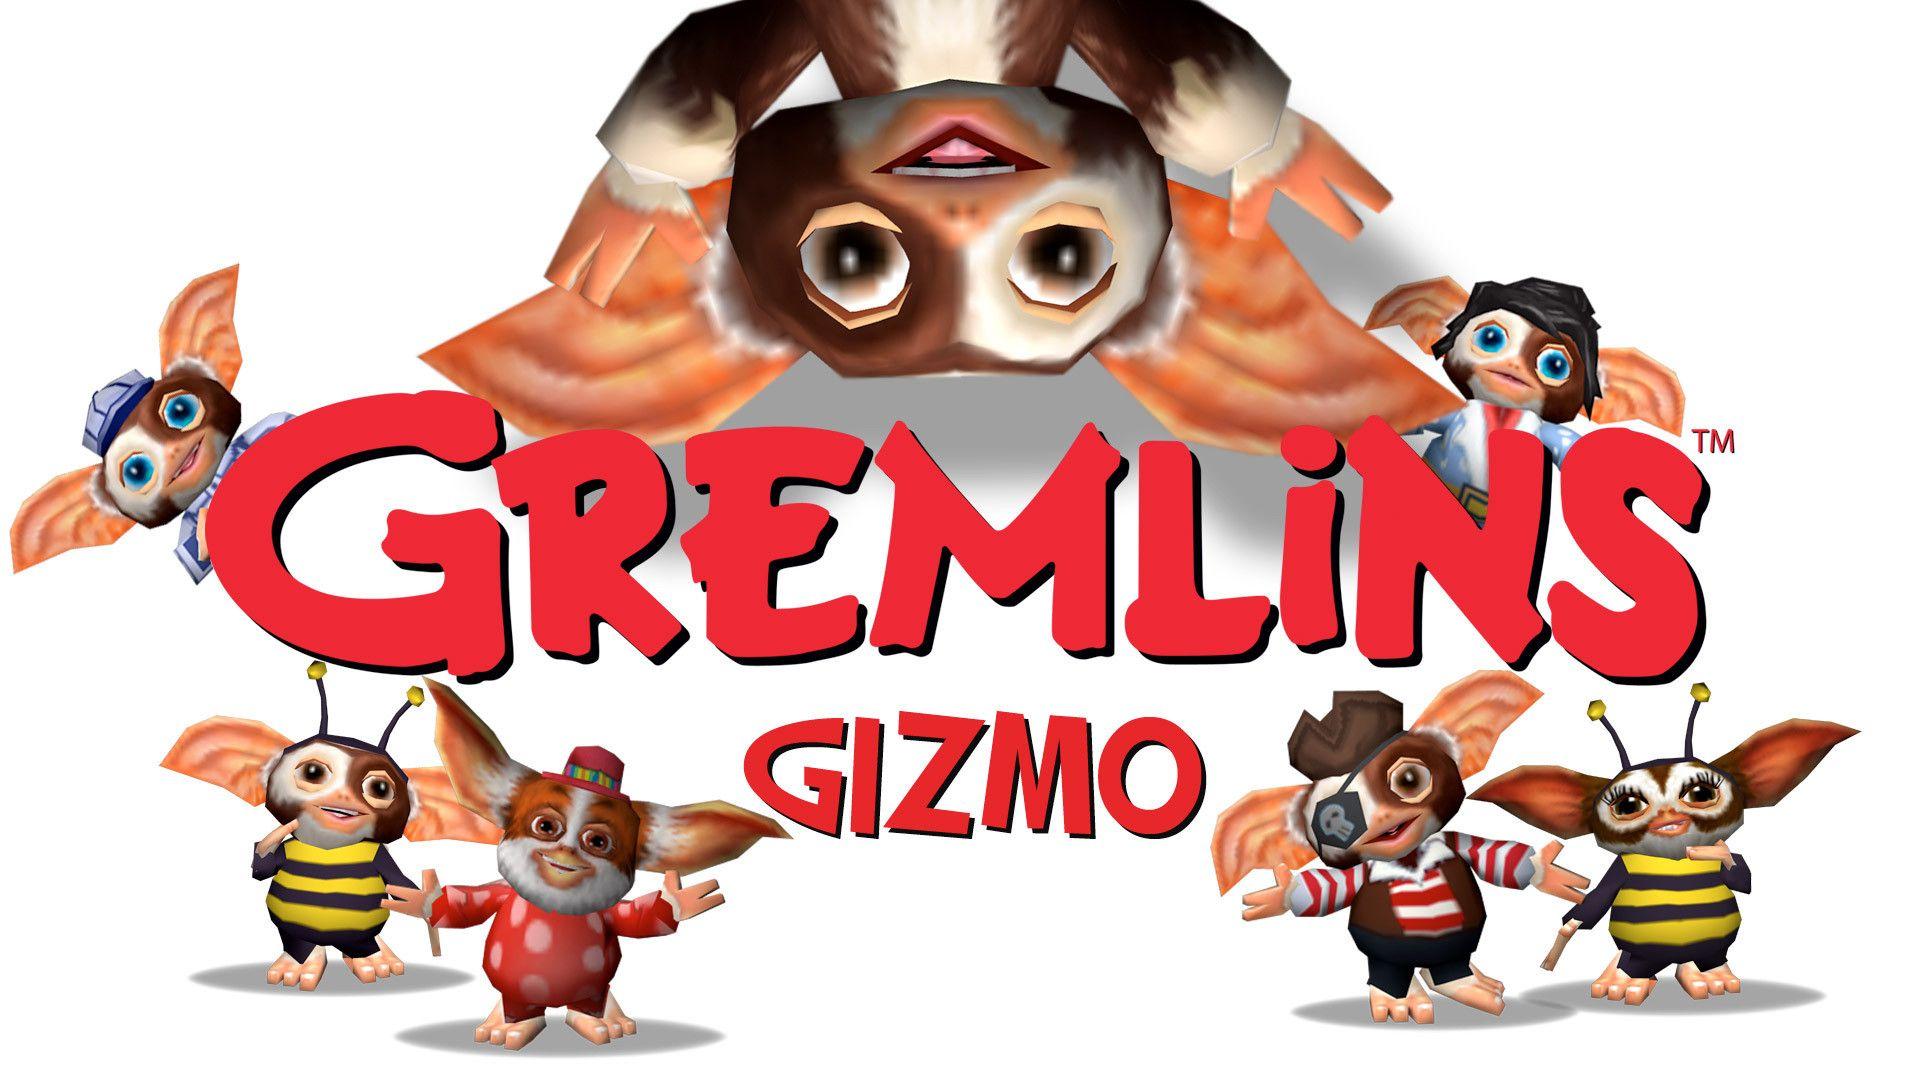 Image Gremlins Gizmo Wii